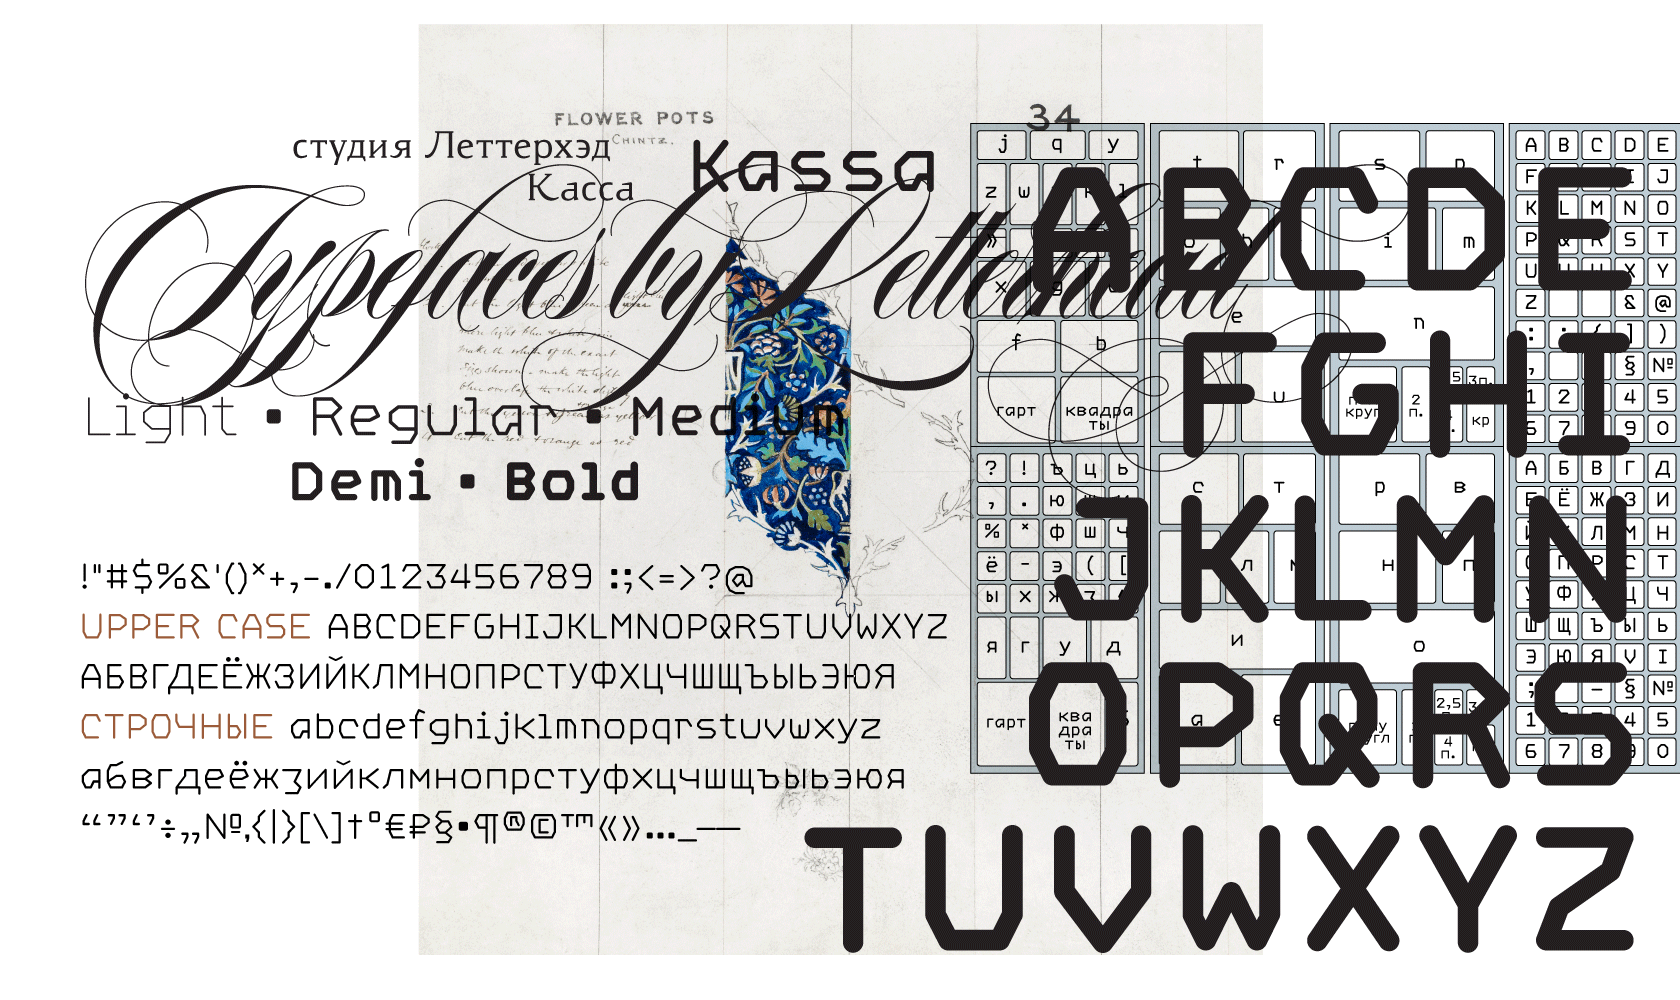 Красивый русский шрифт в телеграмме фото 27